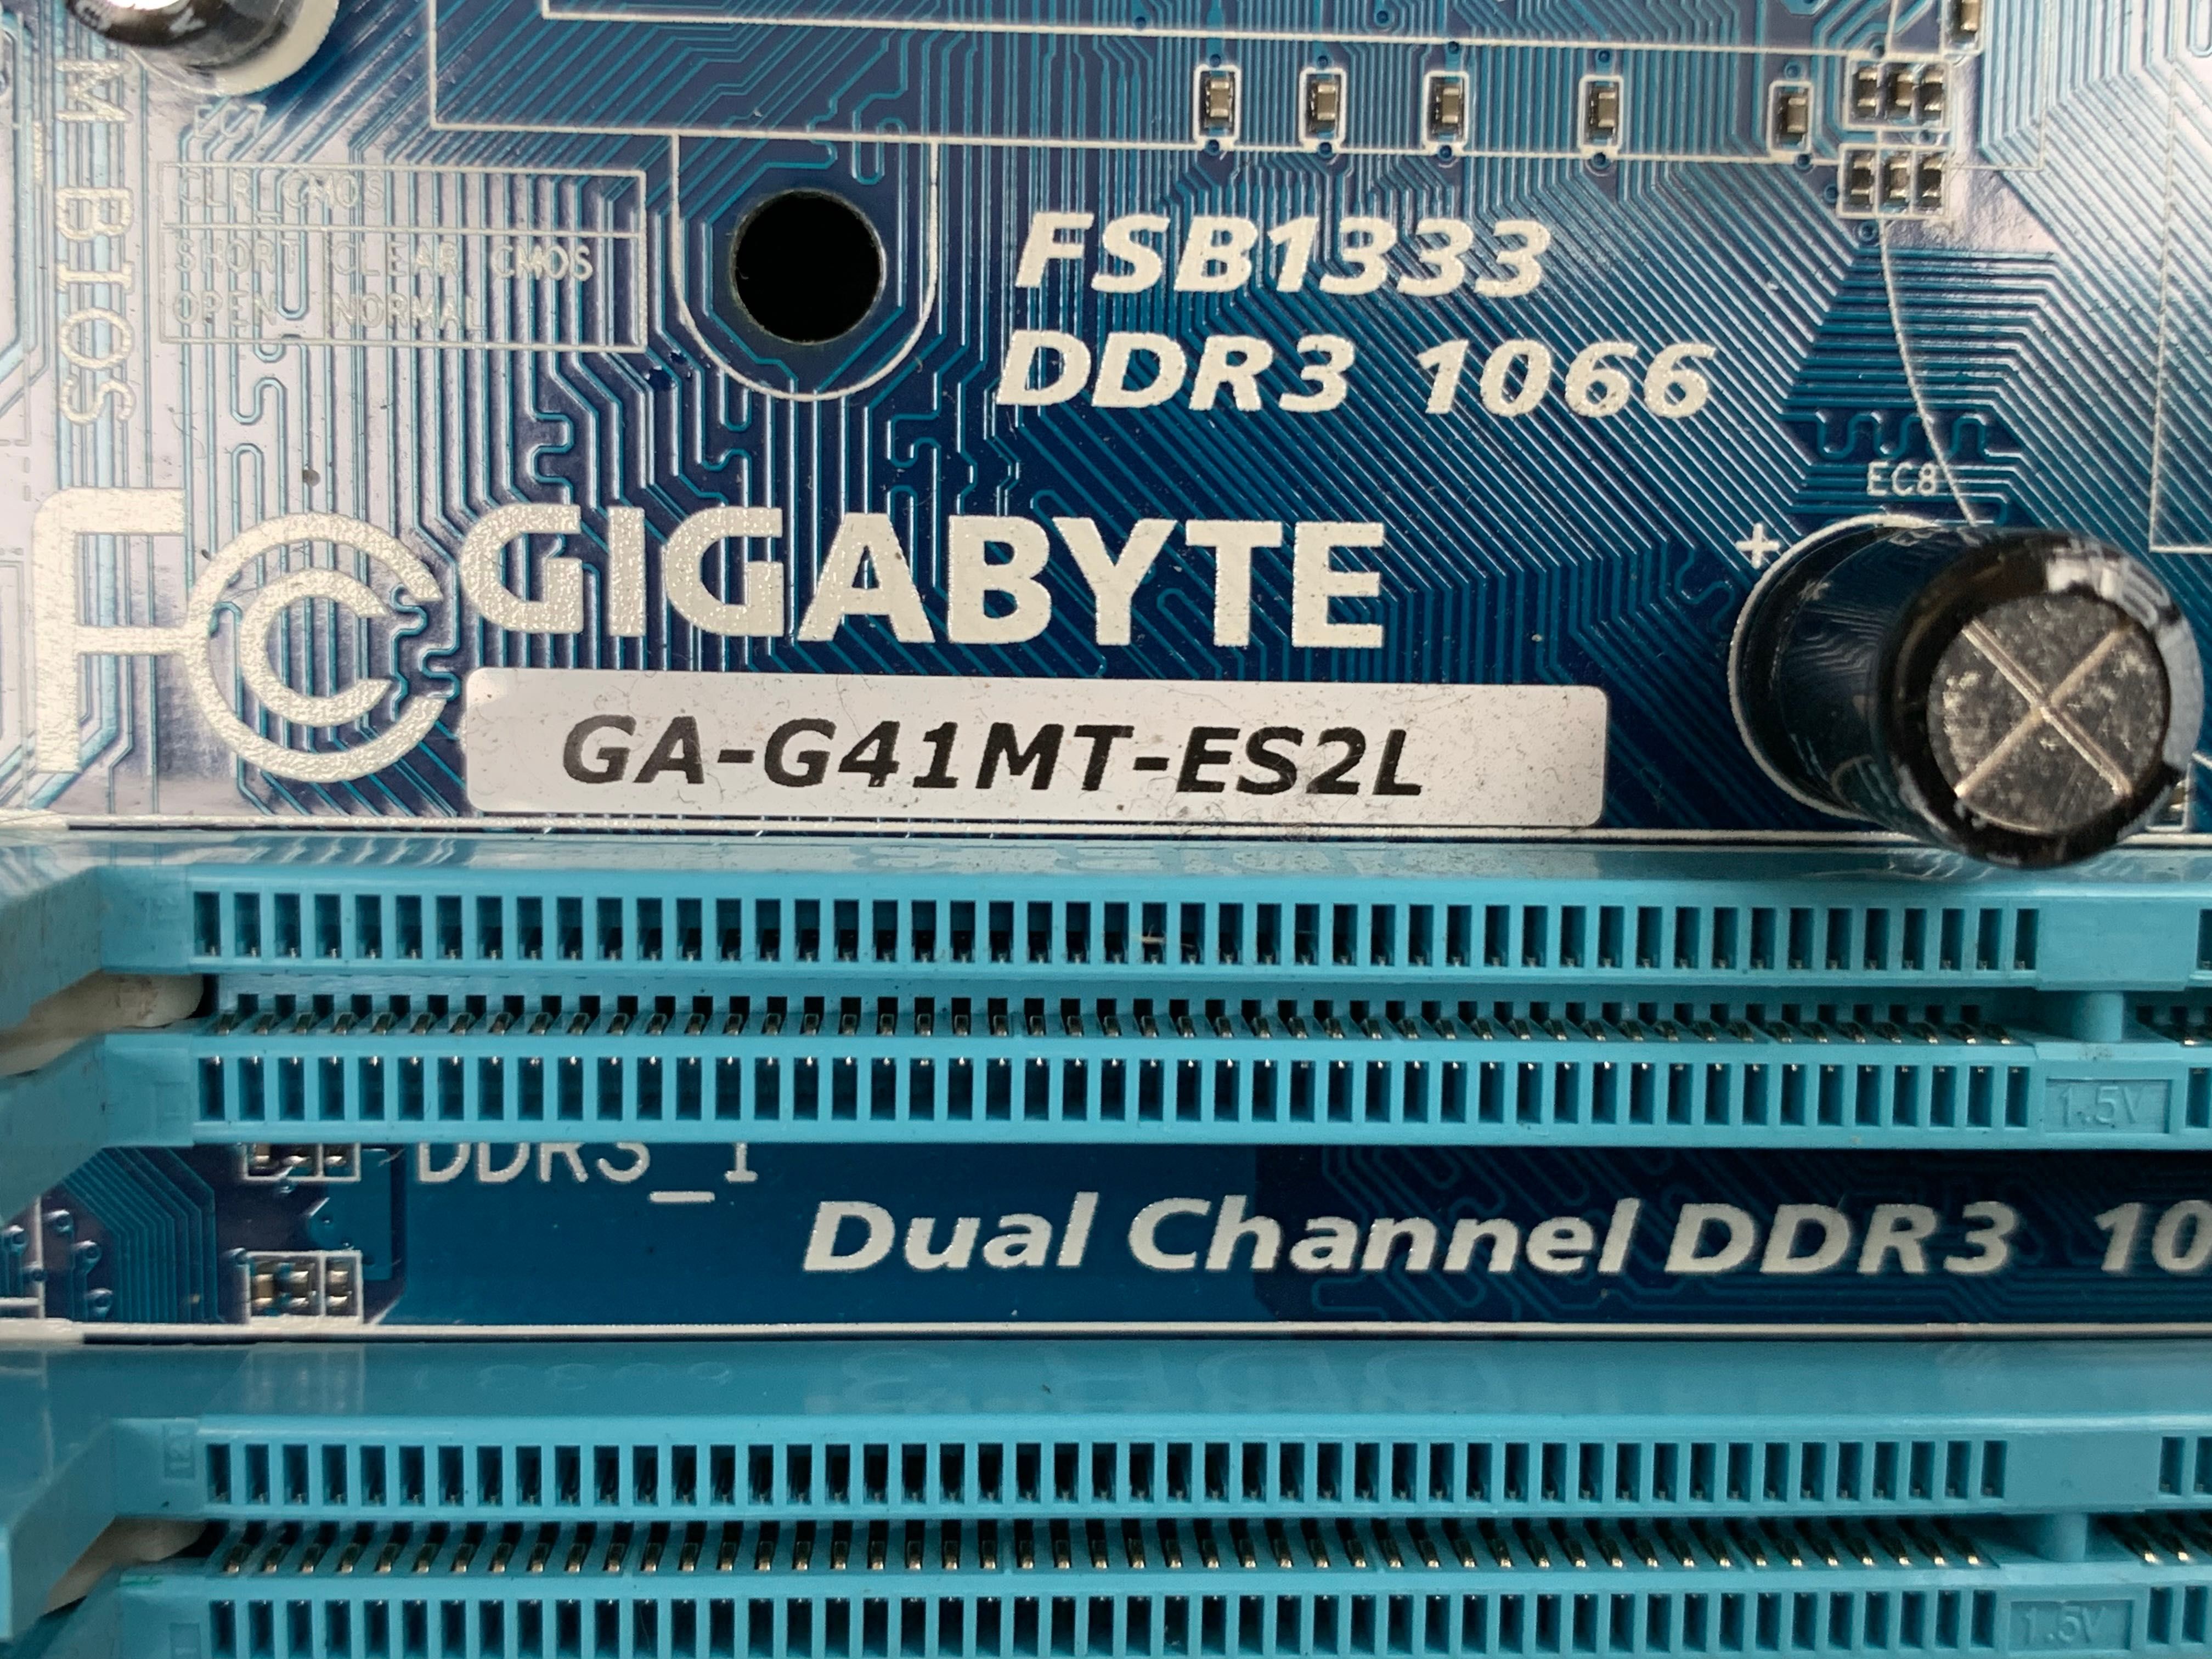 Gigabyte GA-G41MT-ES2L (rev. 1.3) DDR3 1066 MHz LGA 775